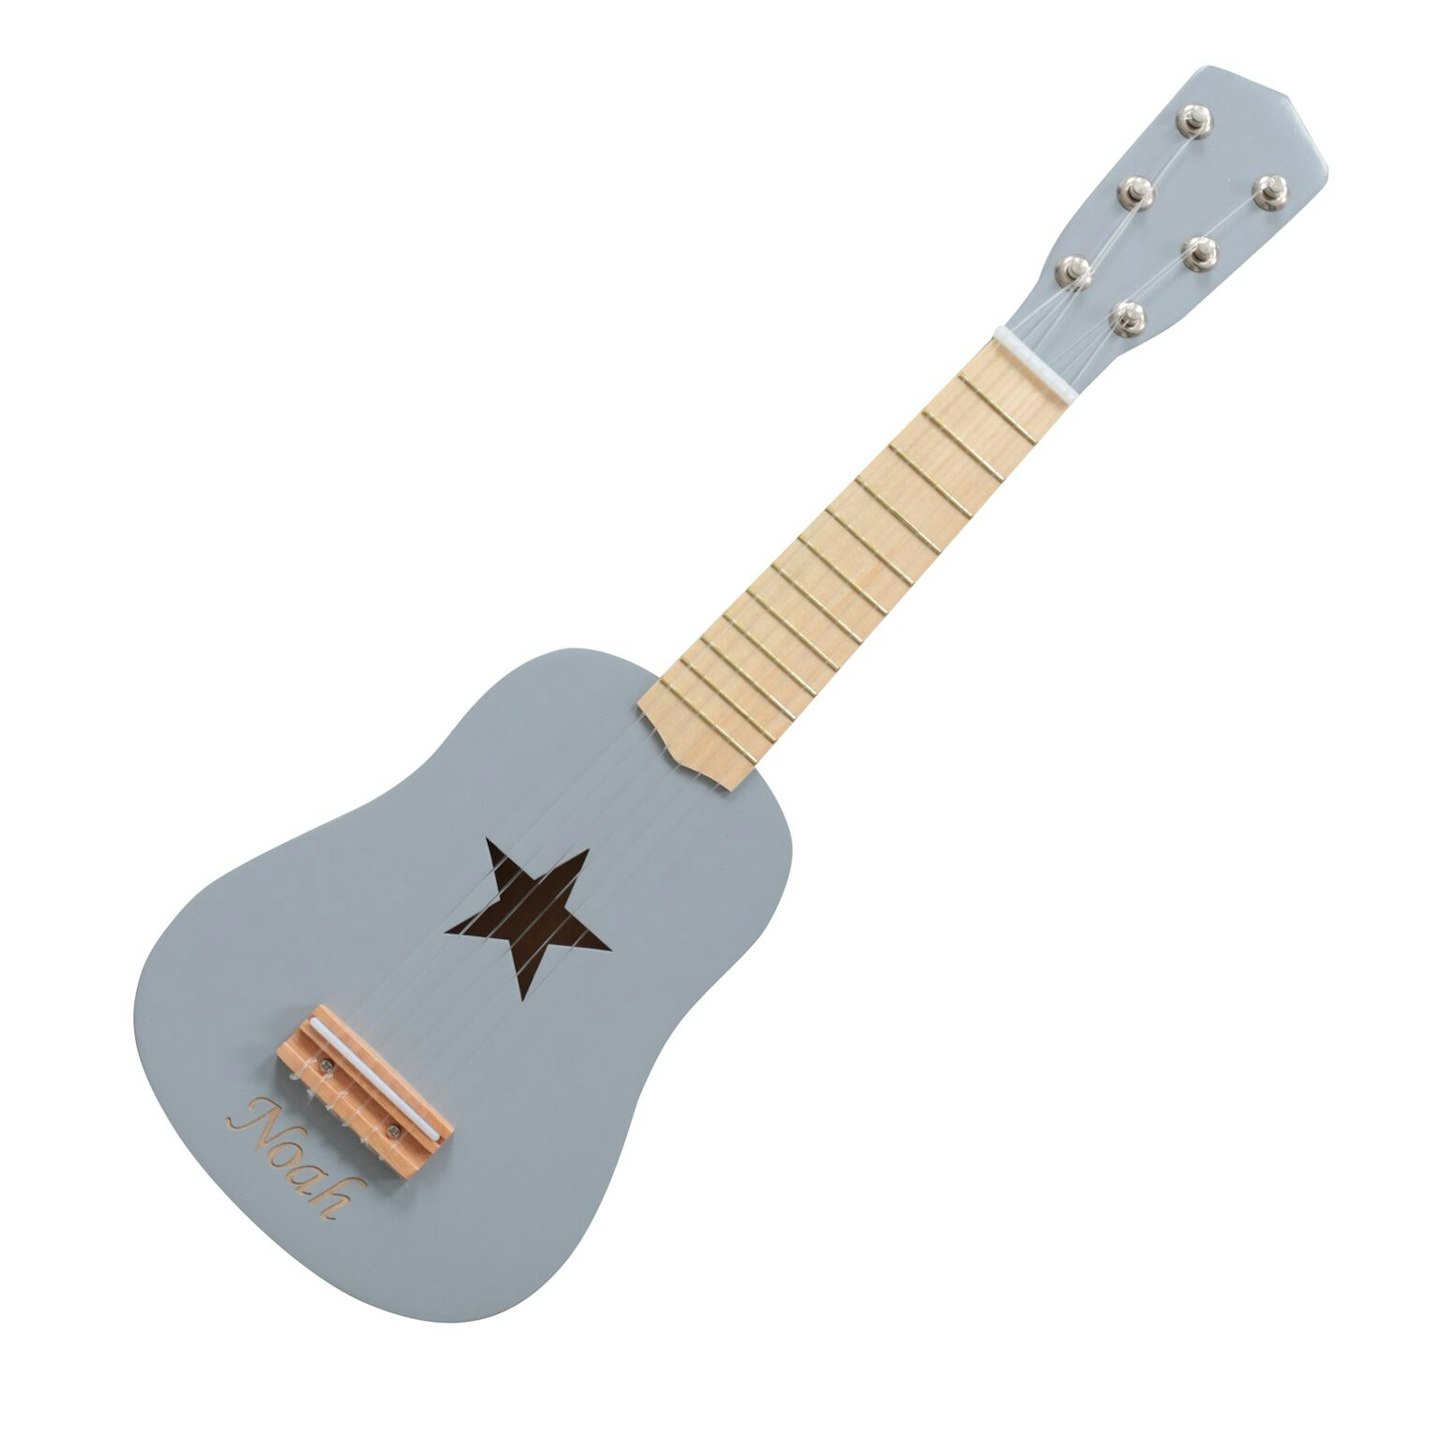 Personalised guitar